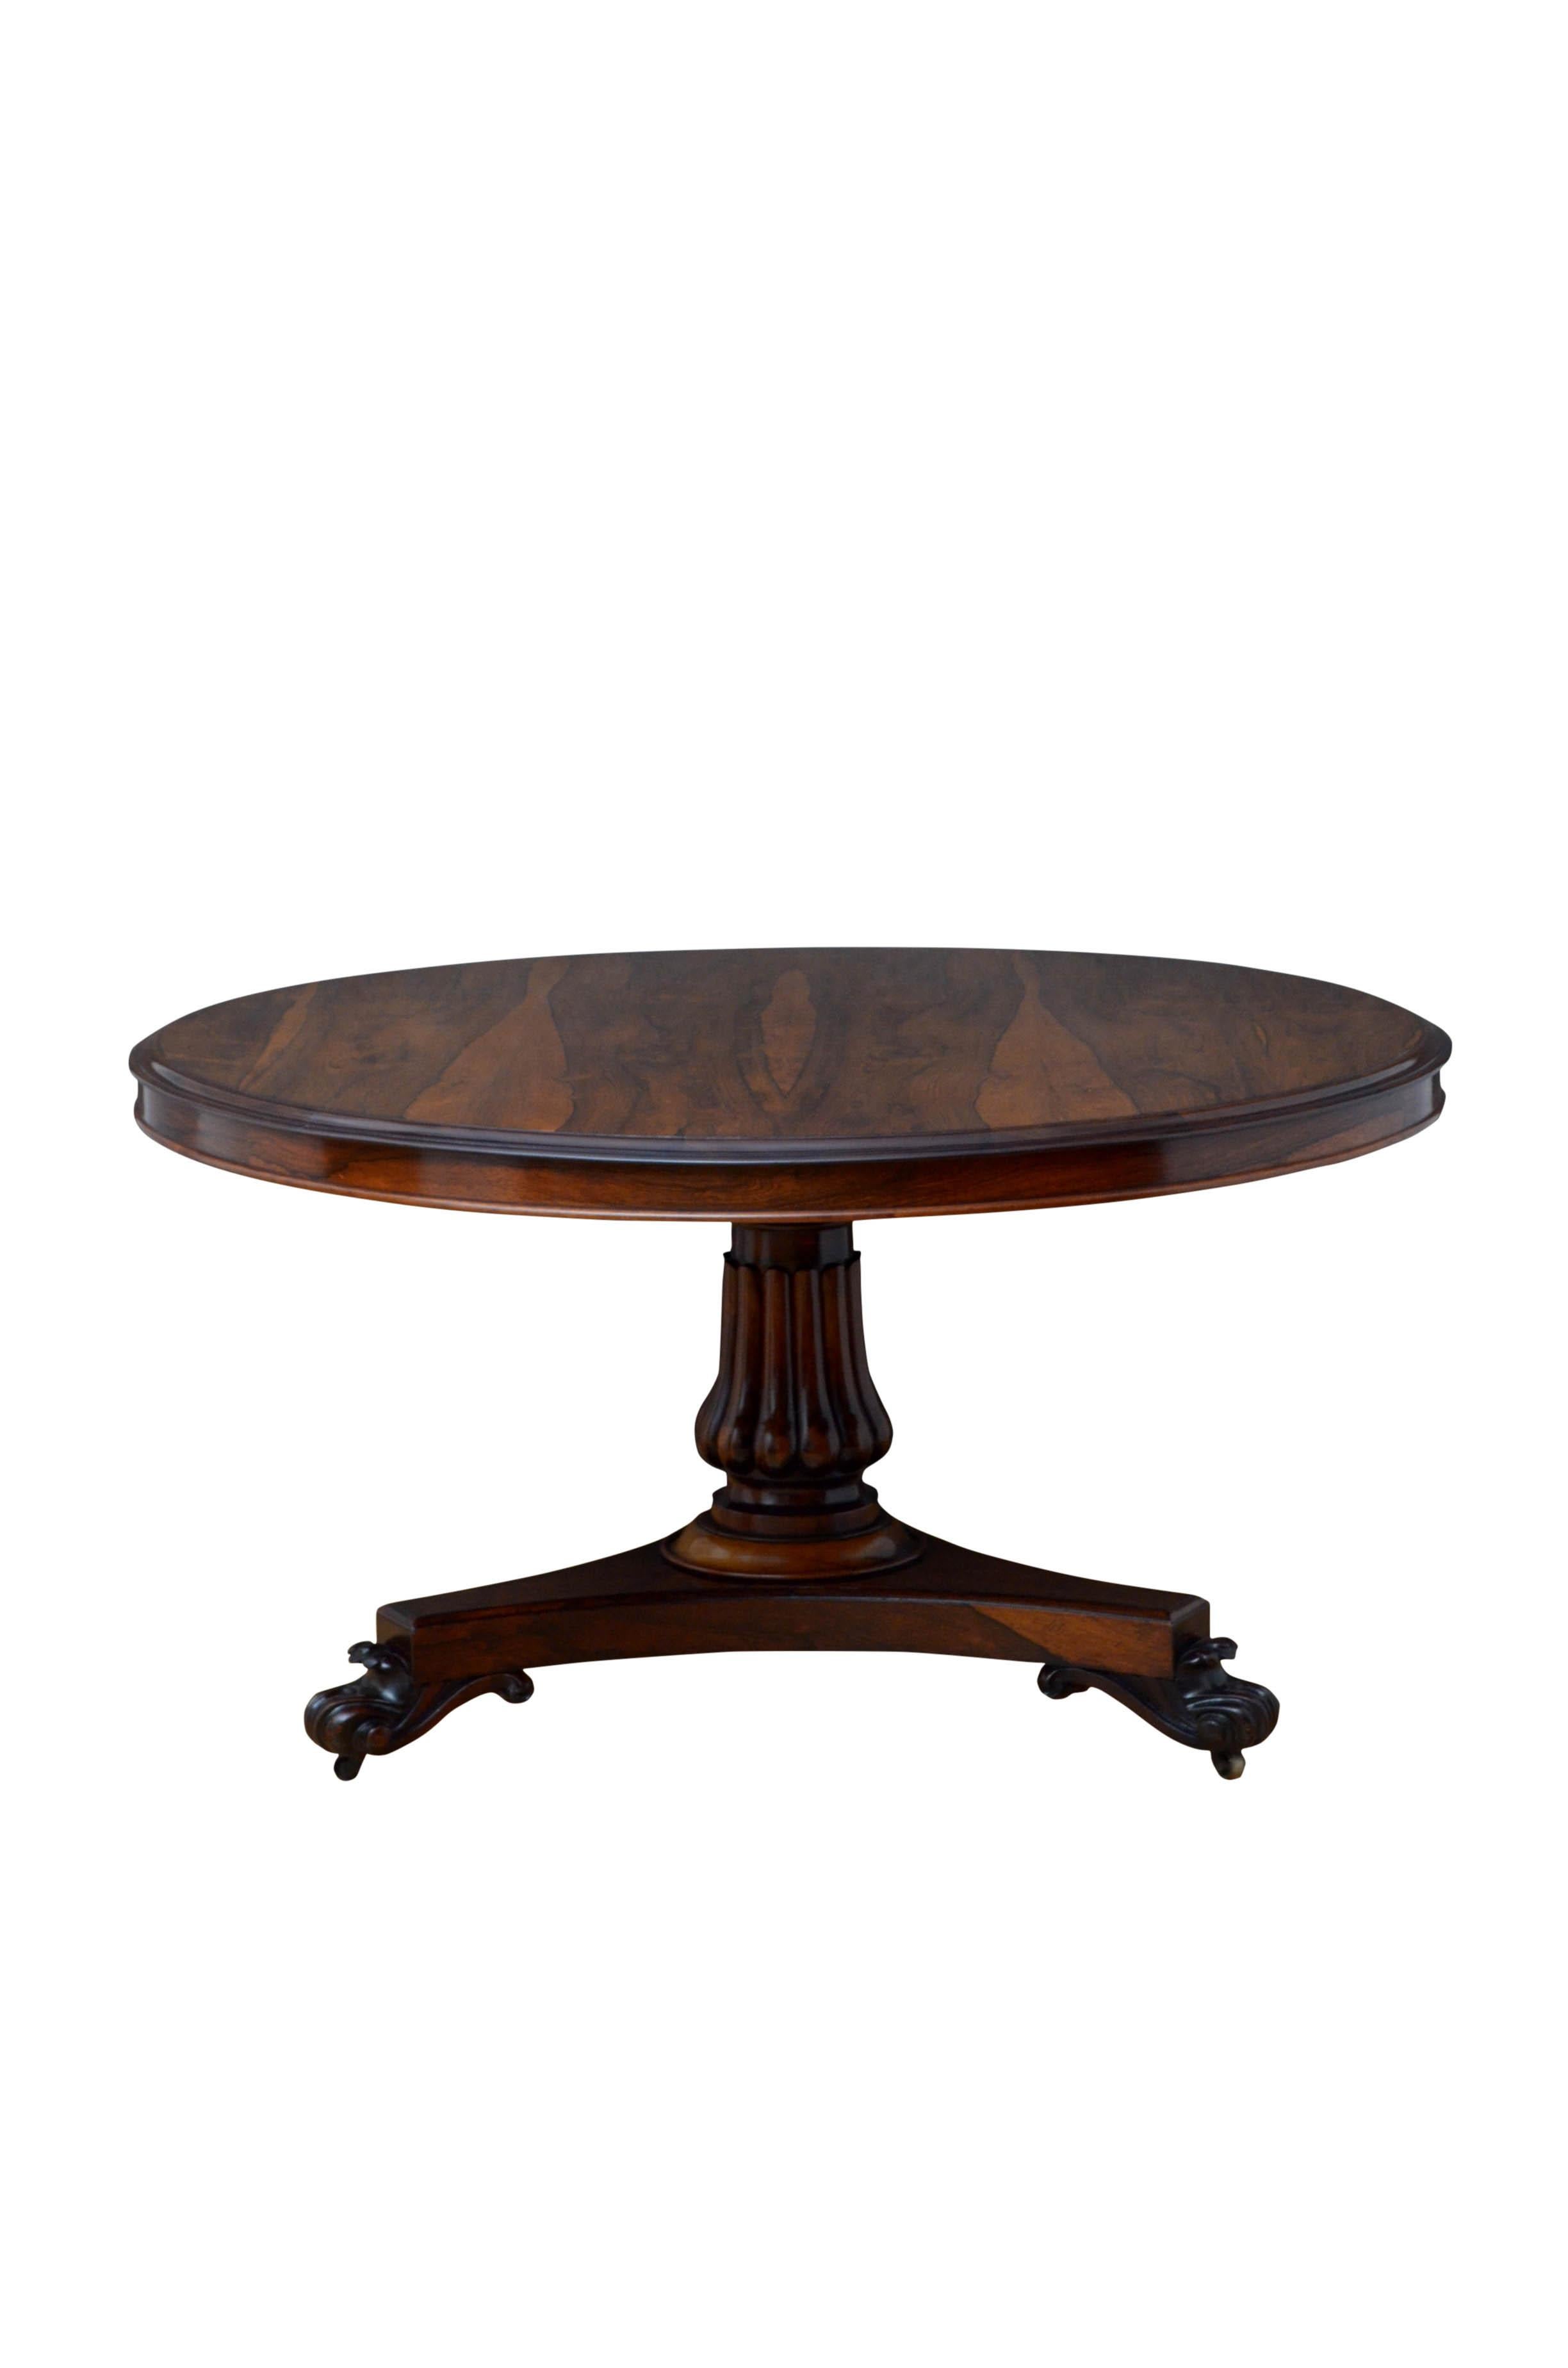 william wood table